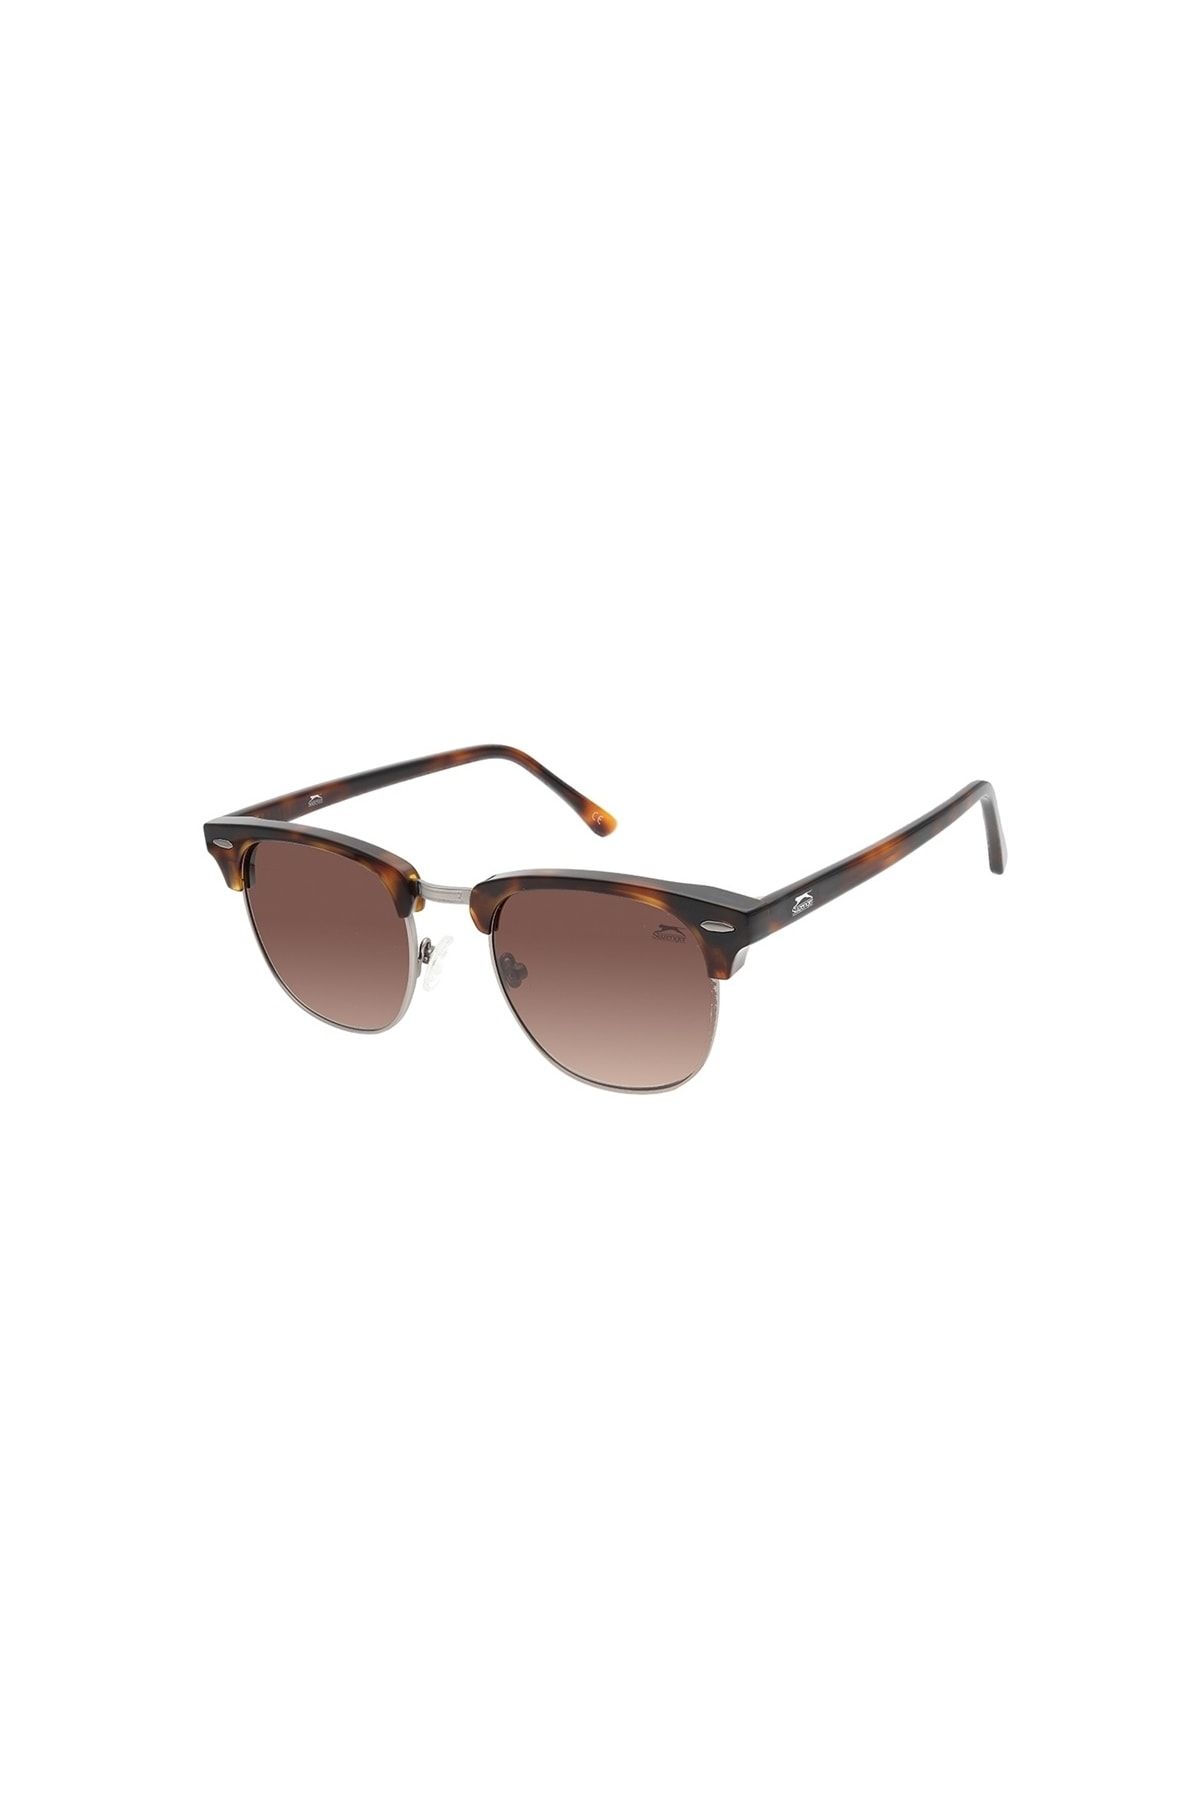 Slazenger sunglasses model 6457 color c1 on TrendyTed